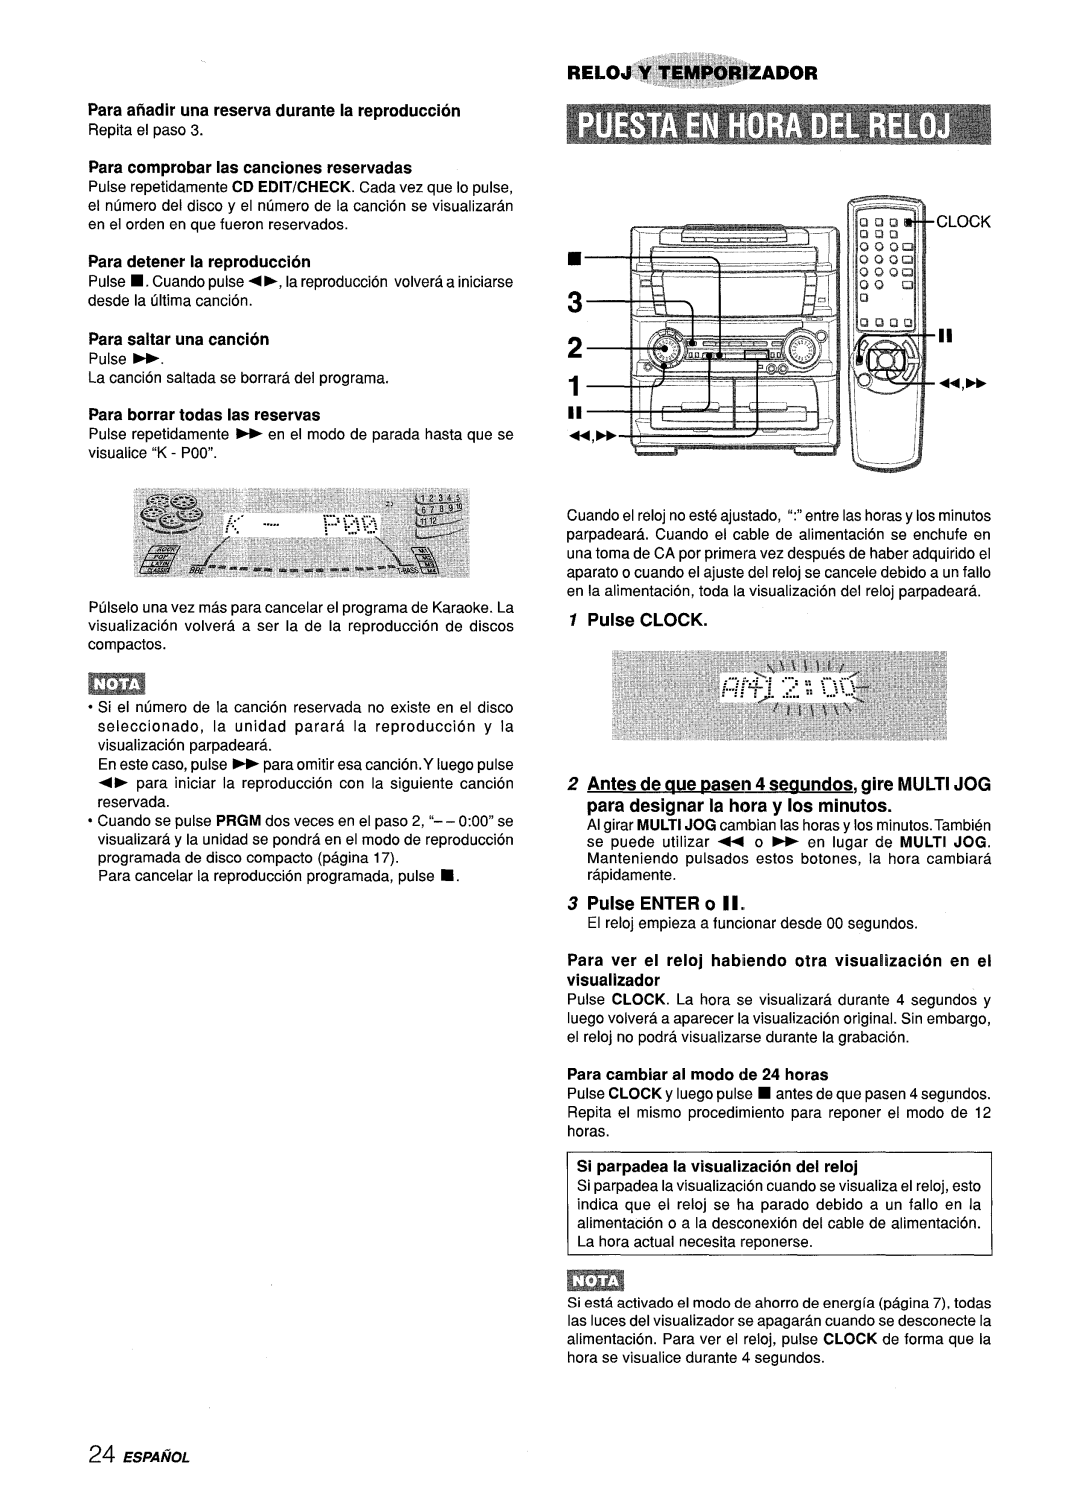 Aiwa Z-L70 manual f,--- .L, Pulse CLOCK, Pulse ENTER, Para anadir una reserva durante la reproduction, detener 